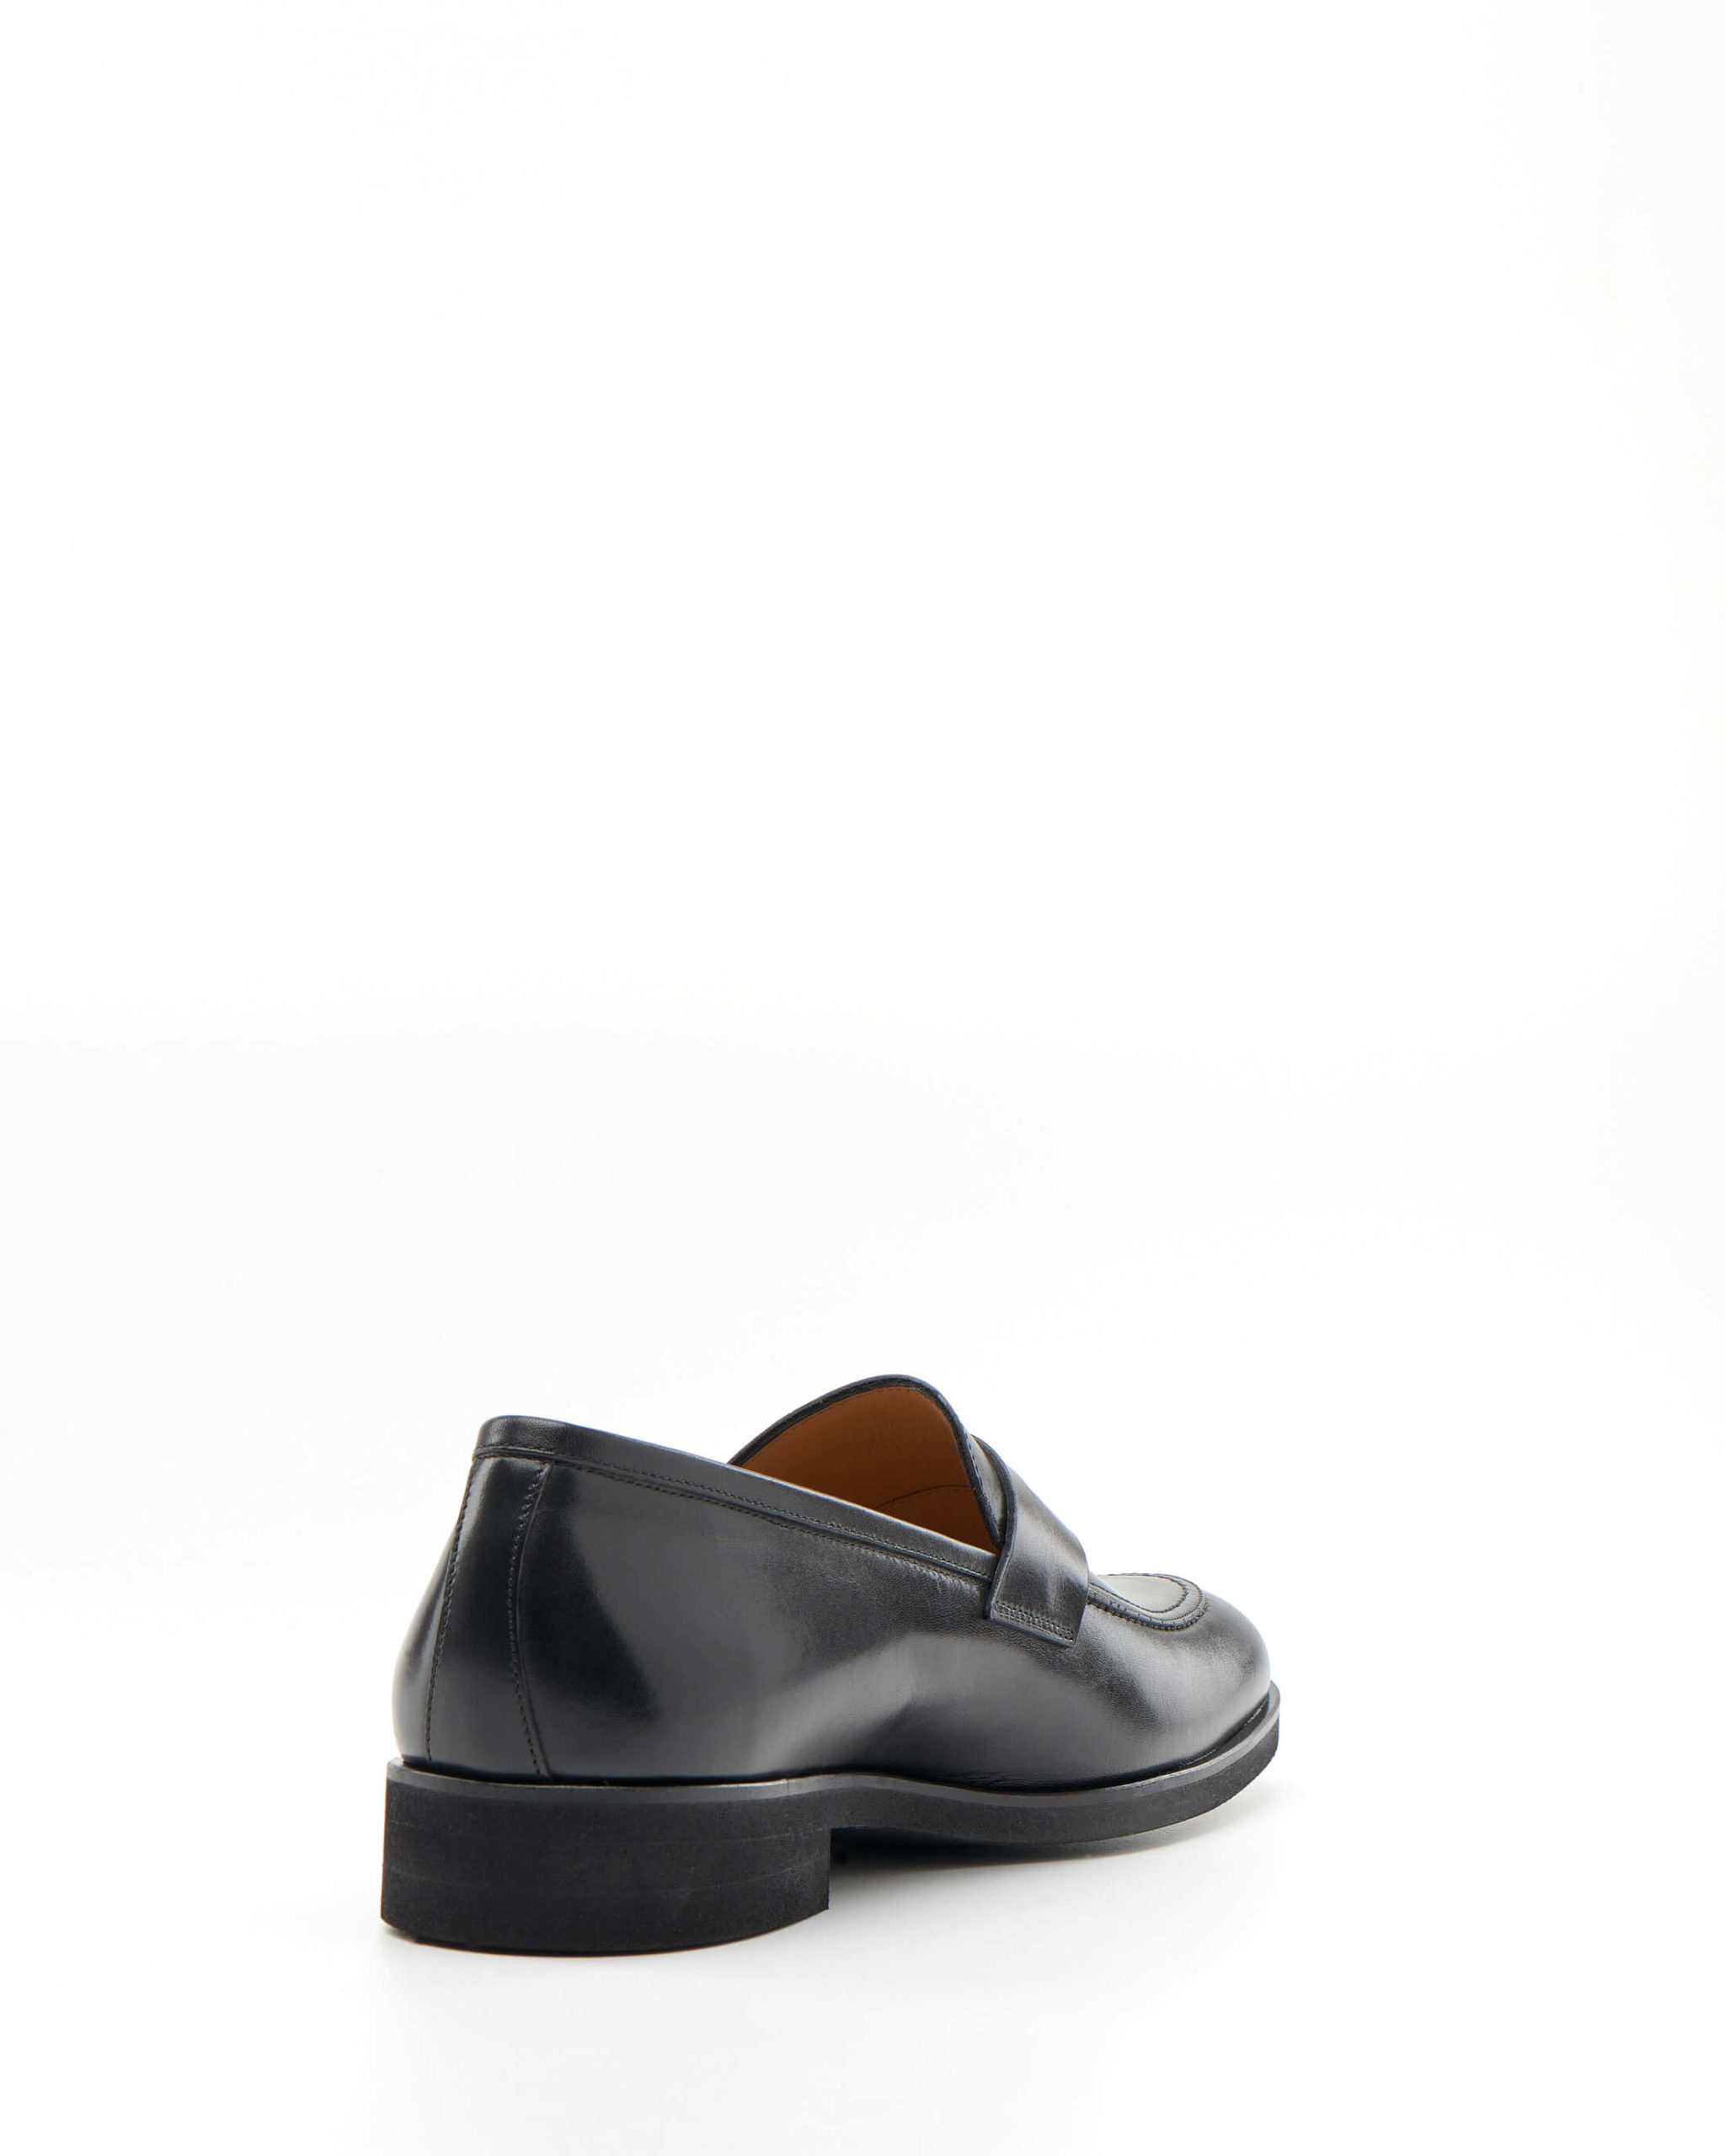 Luis Onofre Portuguese Shoes FW22 – HS0650_11 – Pocillo Black-3